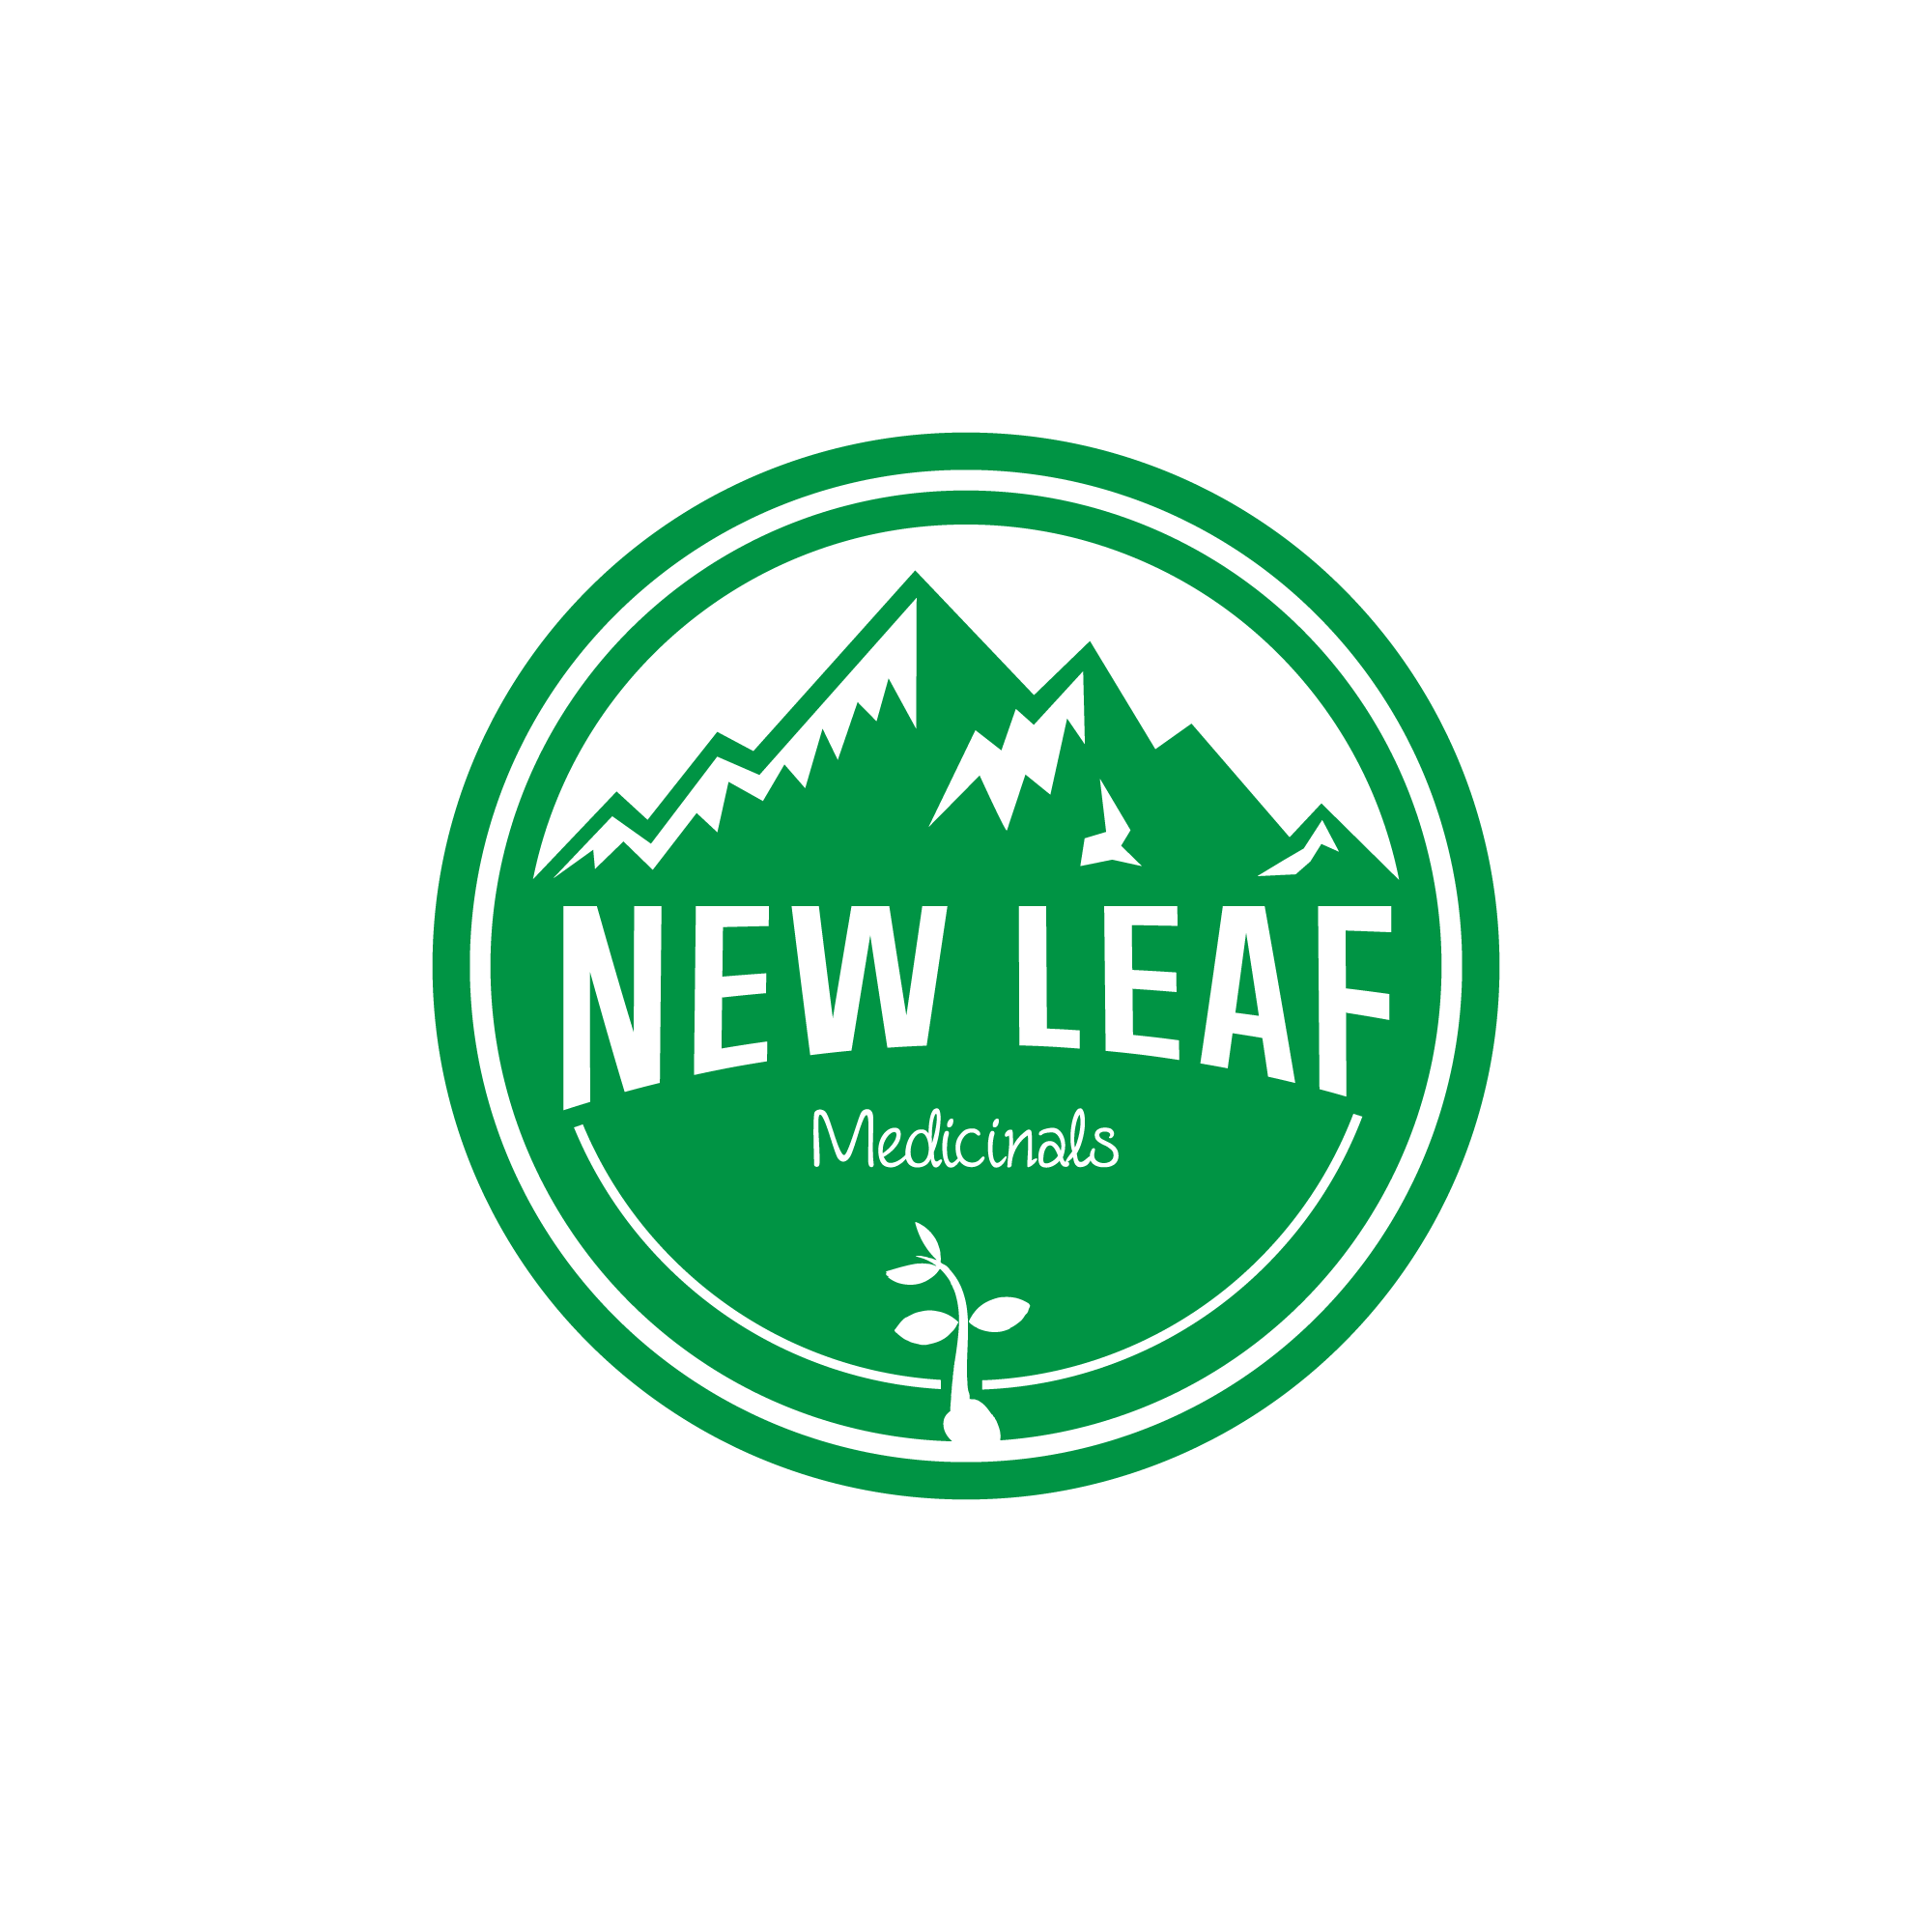 New Leaf Medicinals - Medical Marijuana Doctors - Cannabizme.com